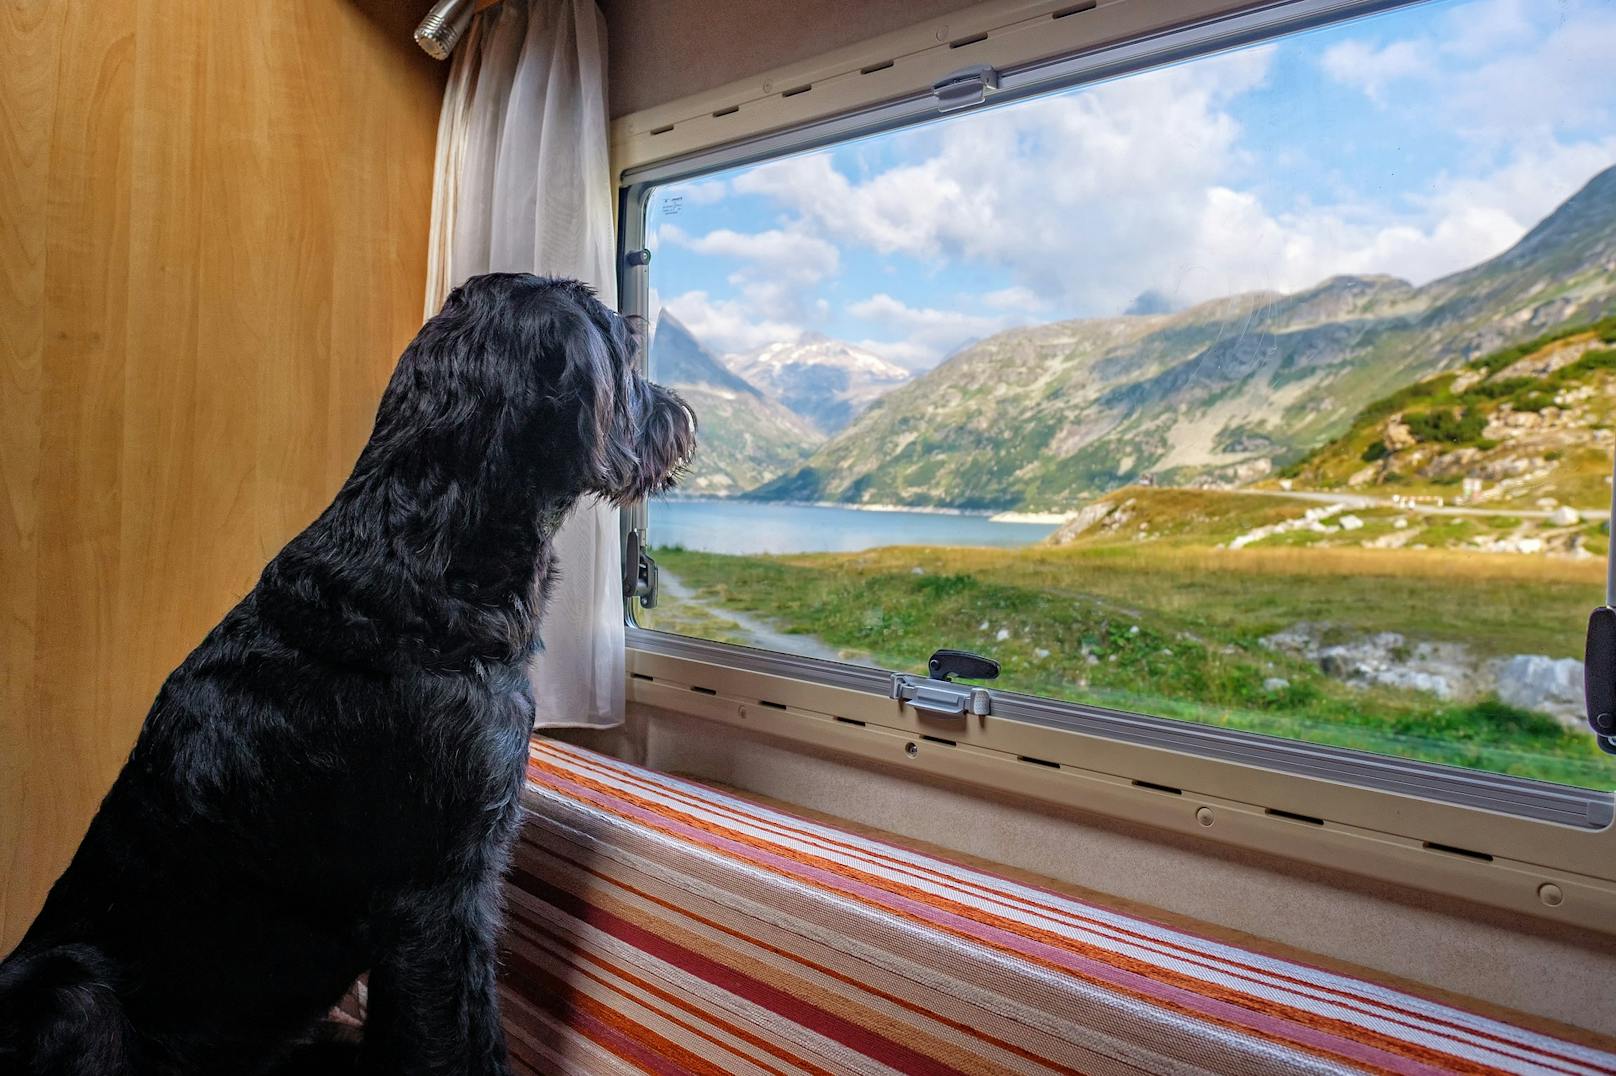 Bei Reisen sollte man darauf achten, dass das Hotel in das man fährt, Hunde akzeptiert oder am besten noch speziell darauf ausgerichtet ist.